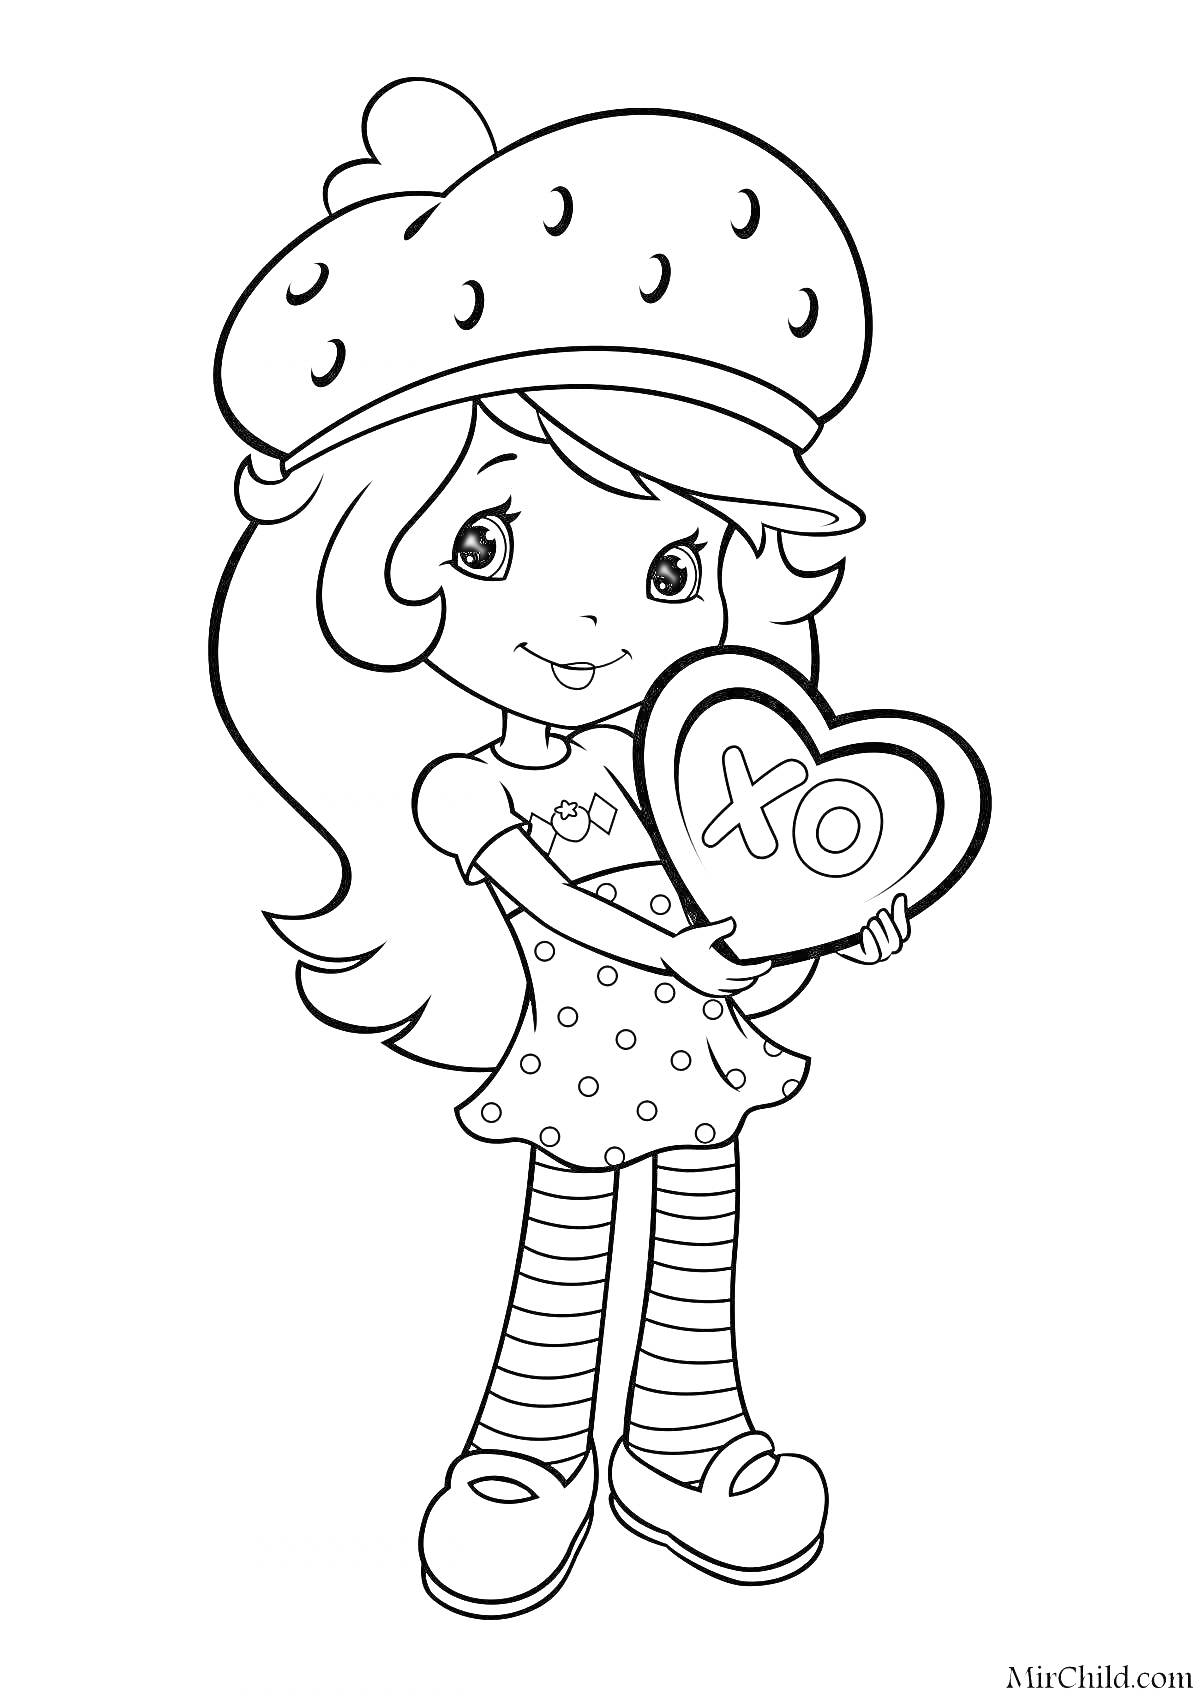 Девочка в шапке в виде клубнички, с сердцем в руках, на котором надпись 